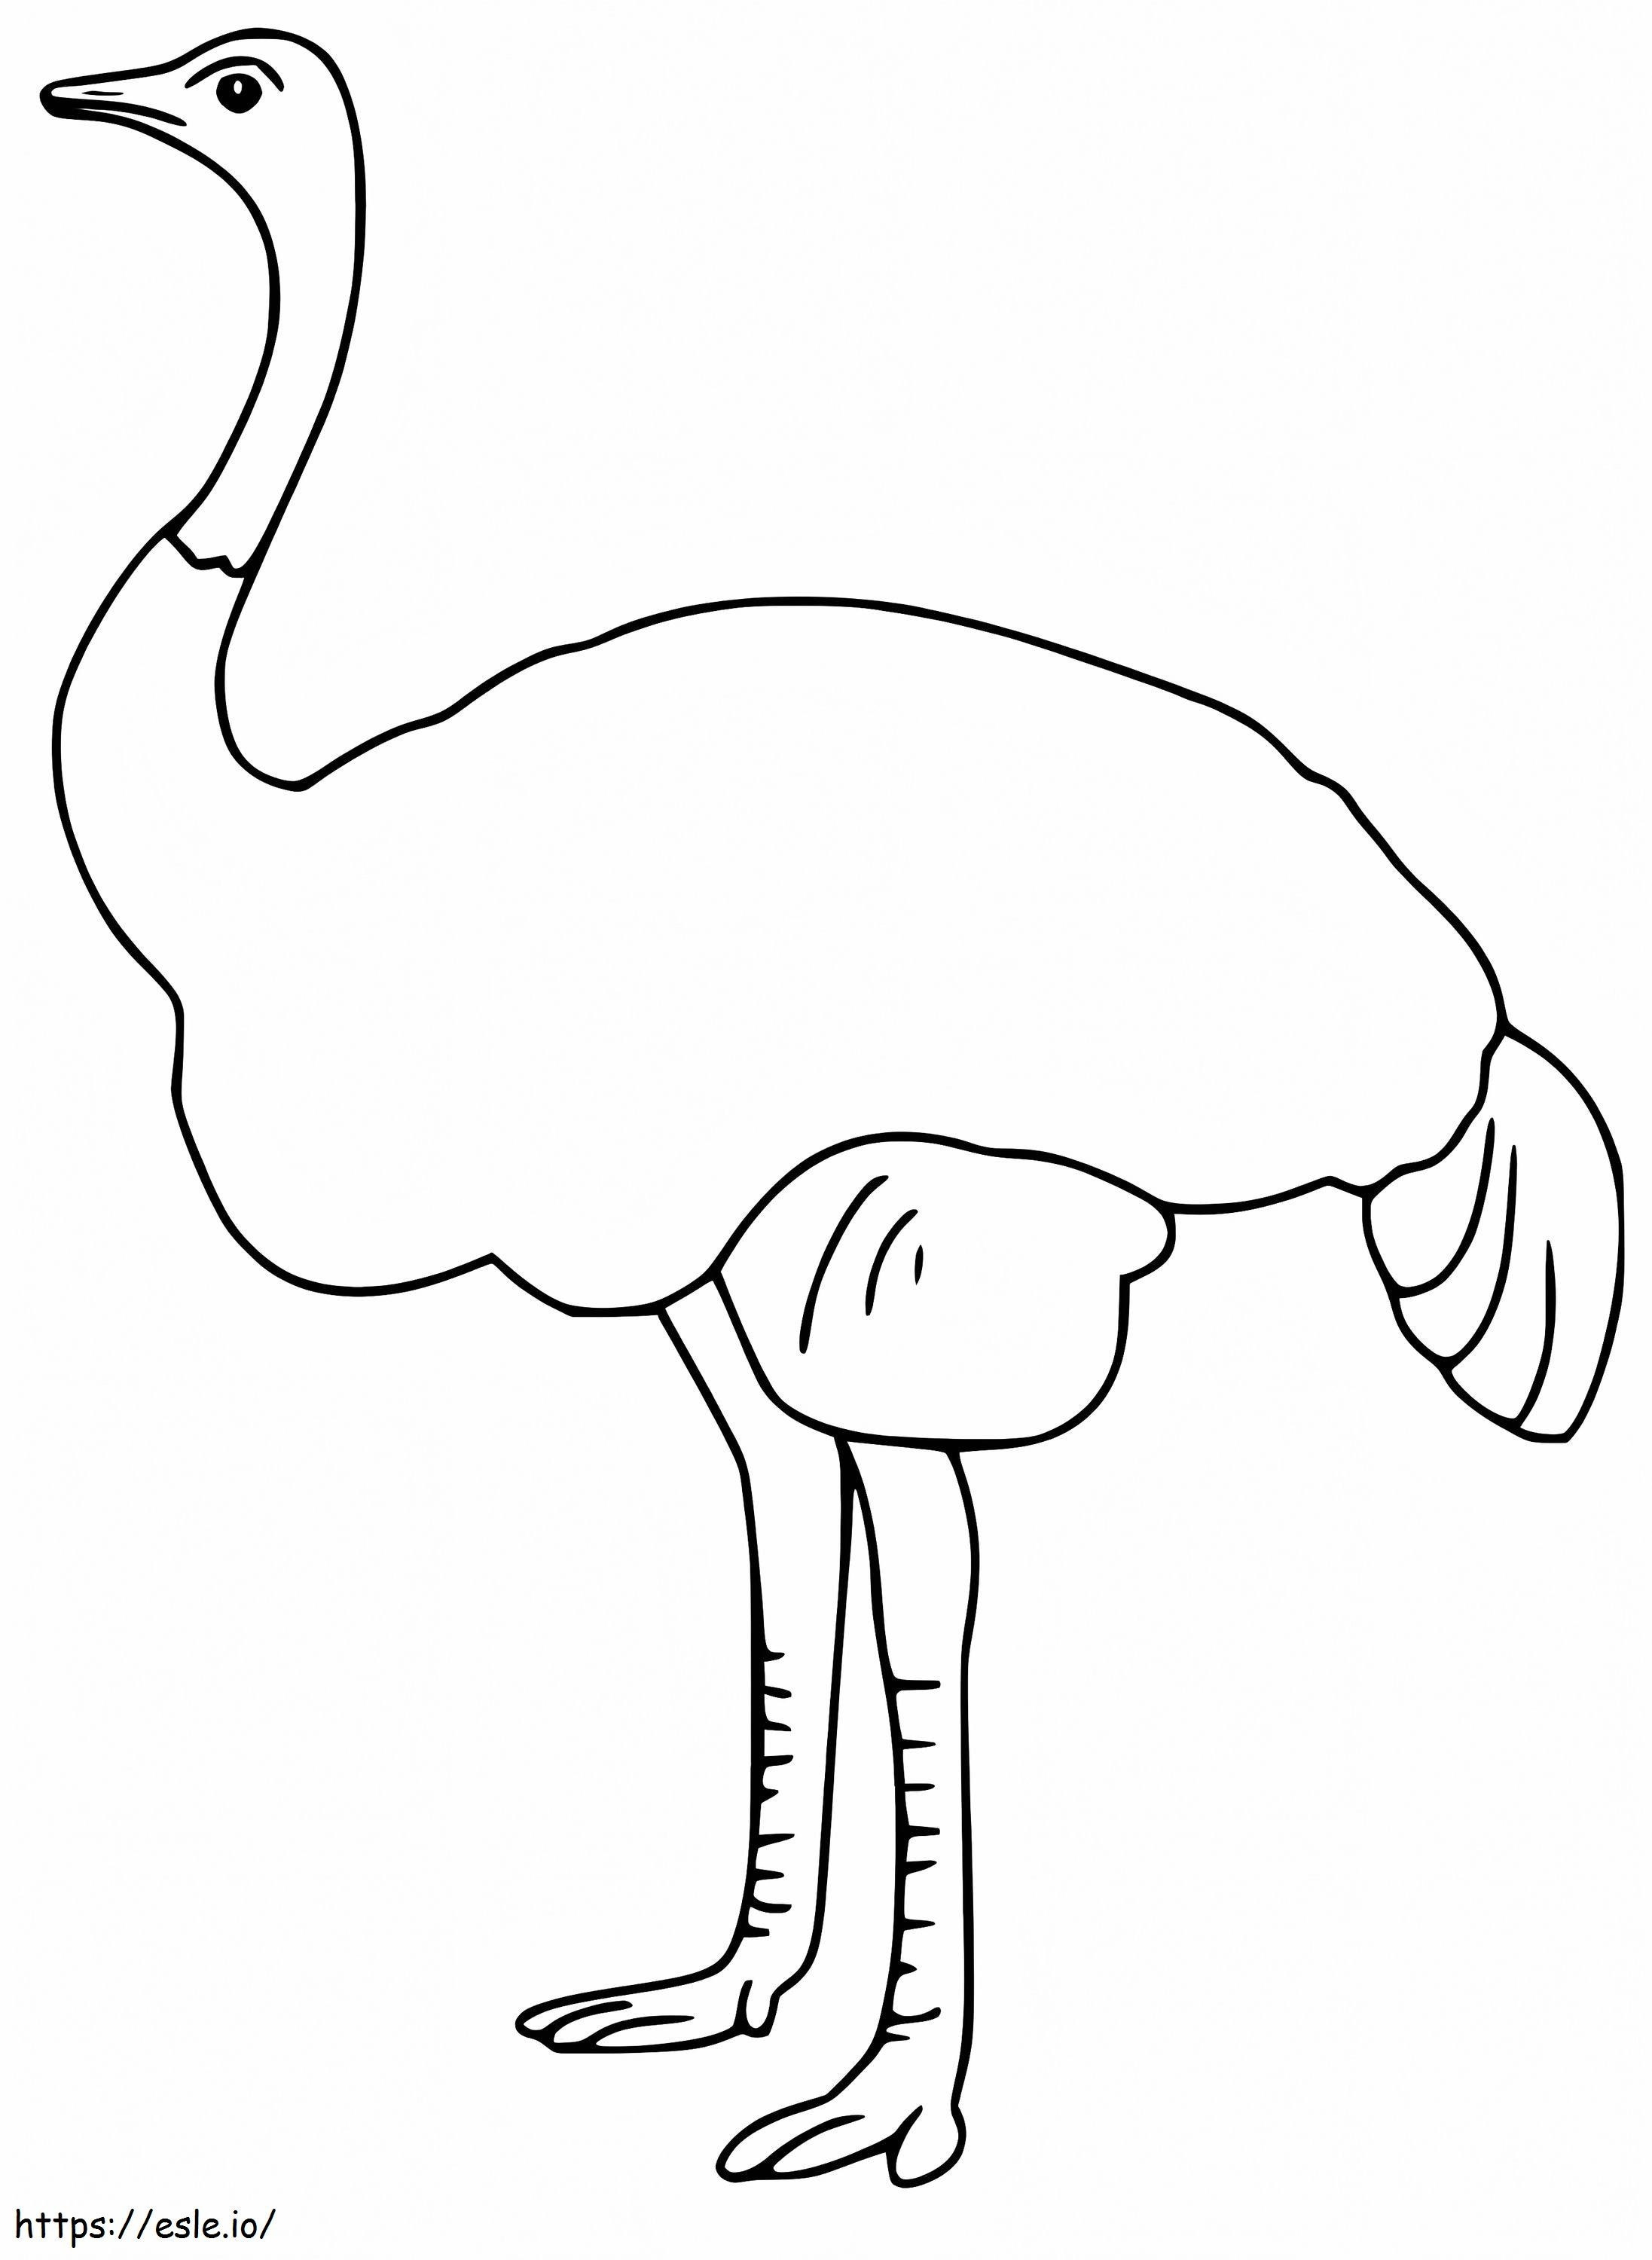 Een simpele emoe kleurplaat kleurplaat